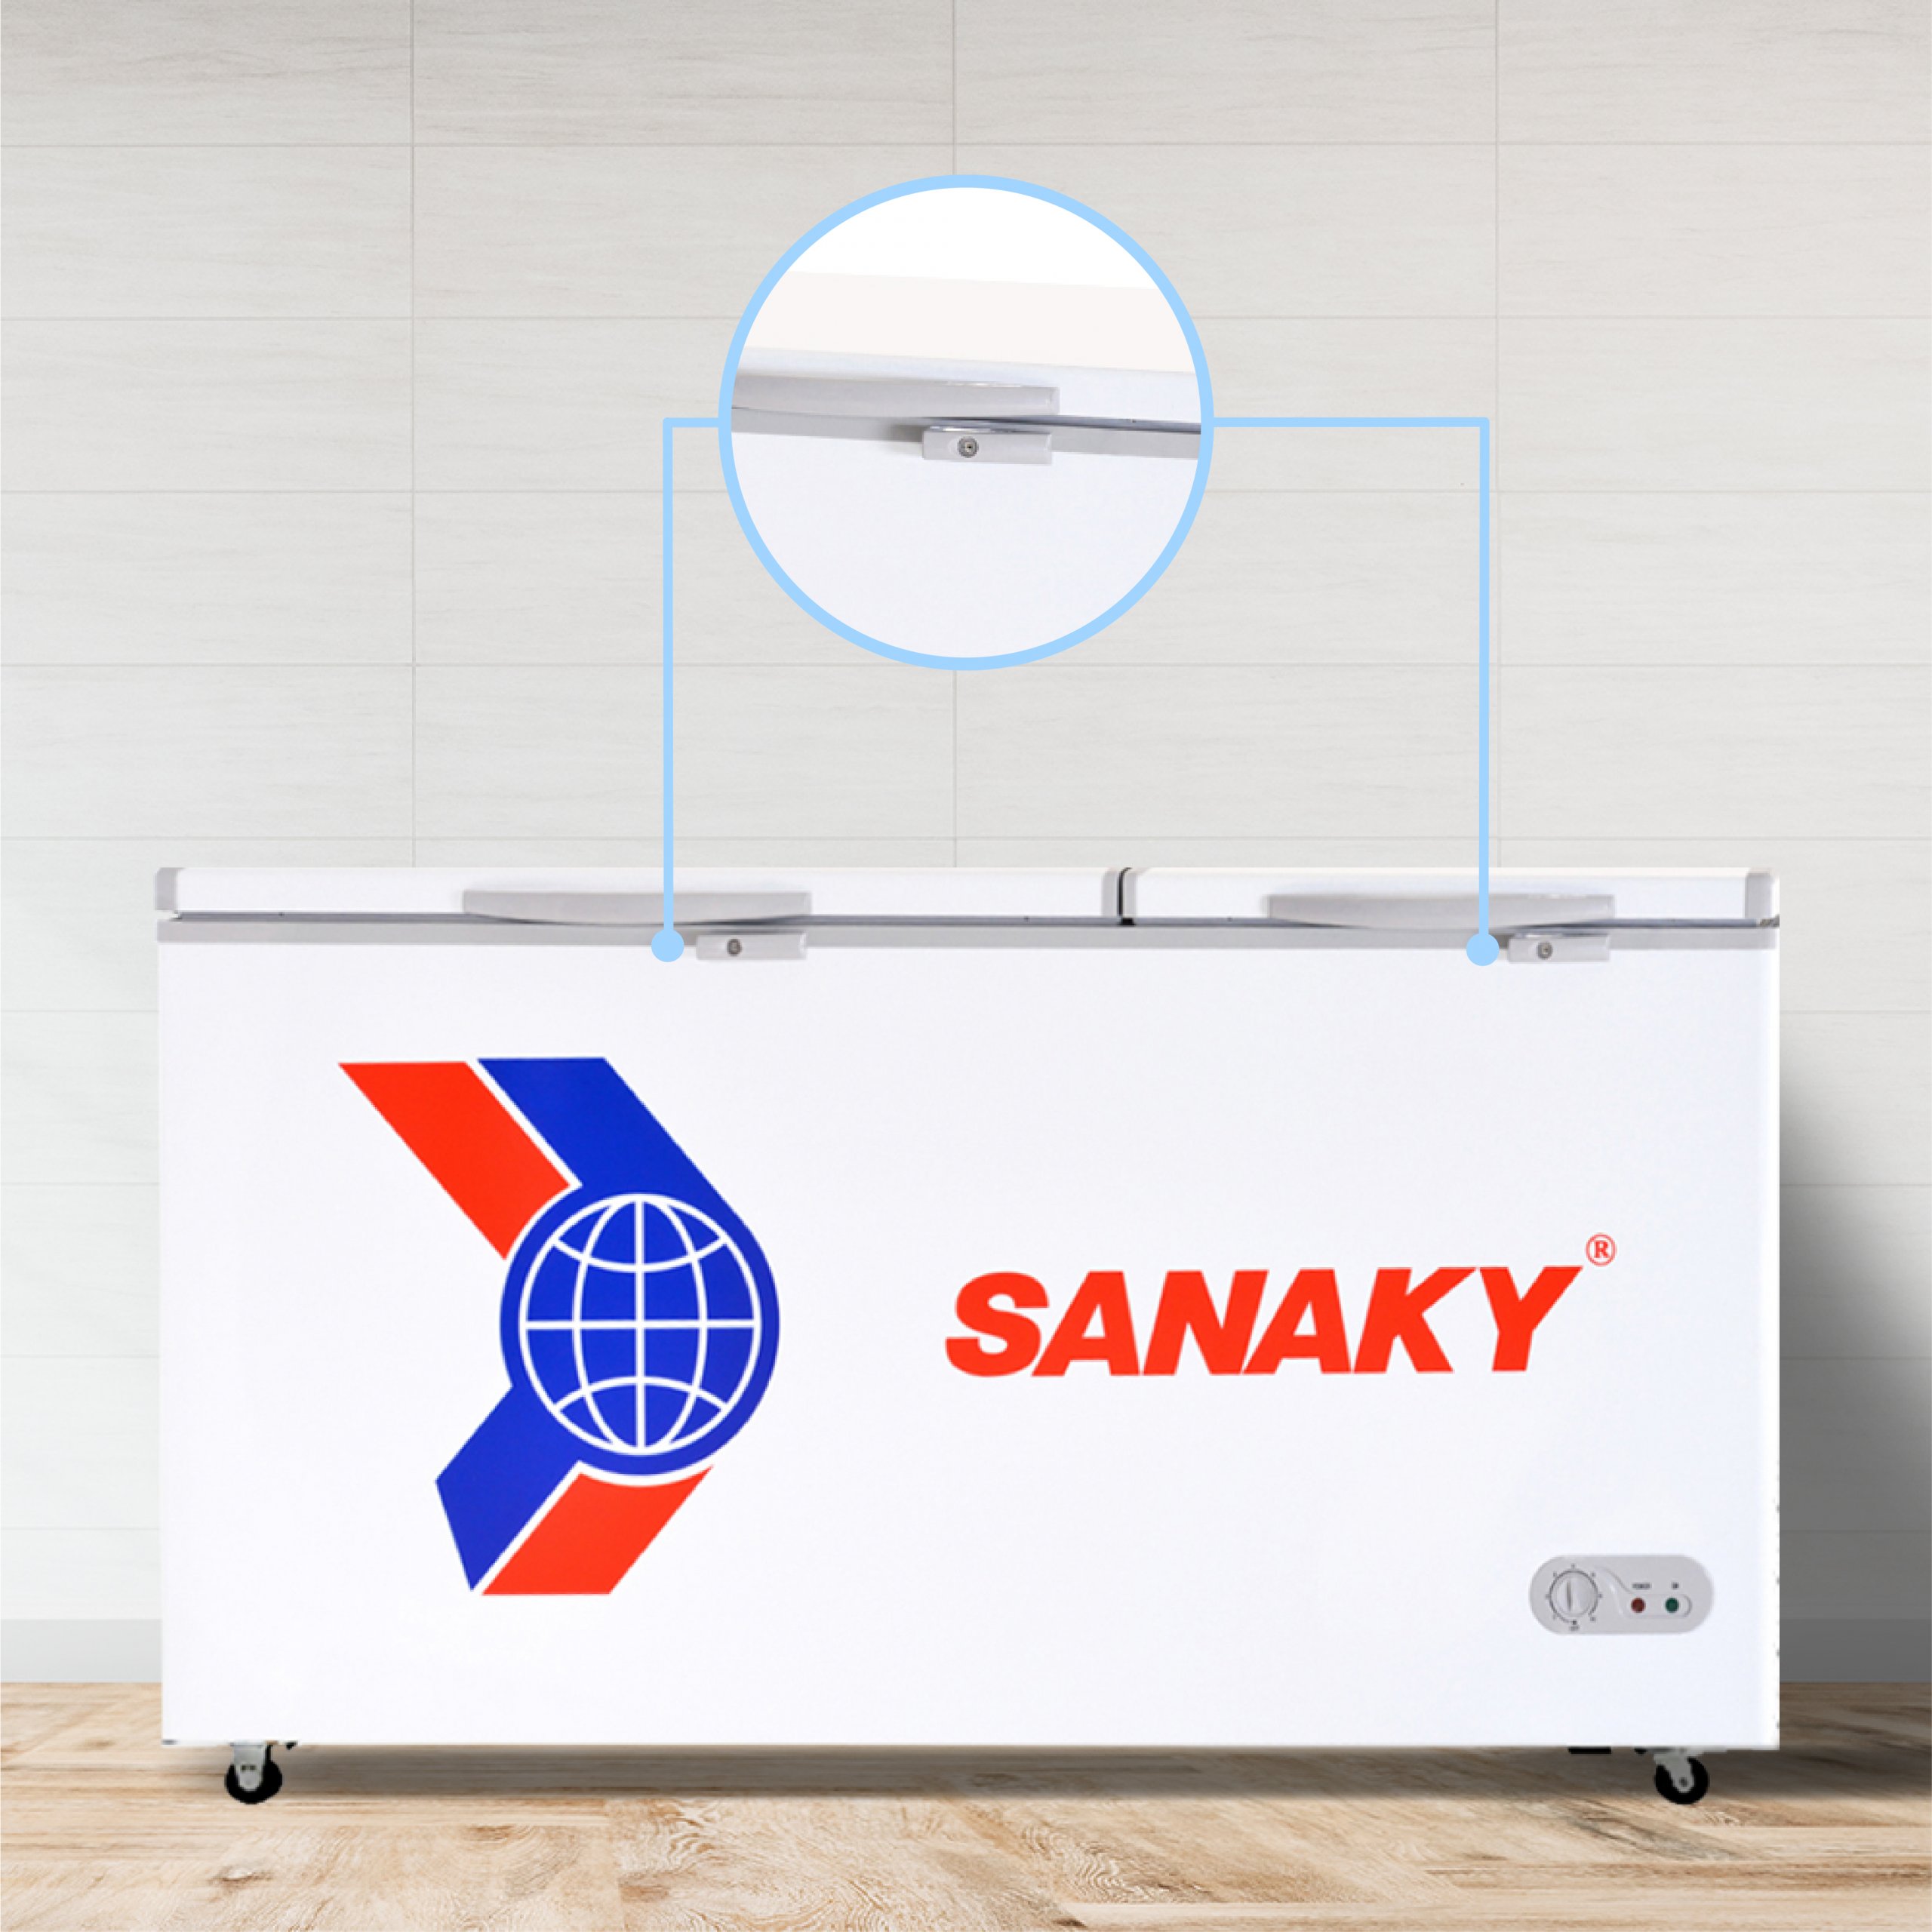 Tủ Đông Sanaky VH-668HY2